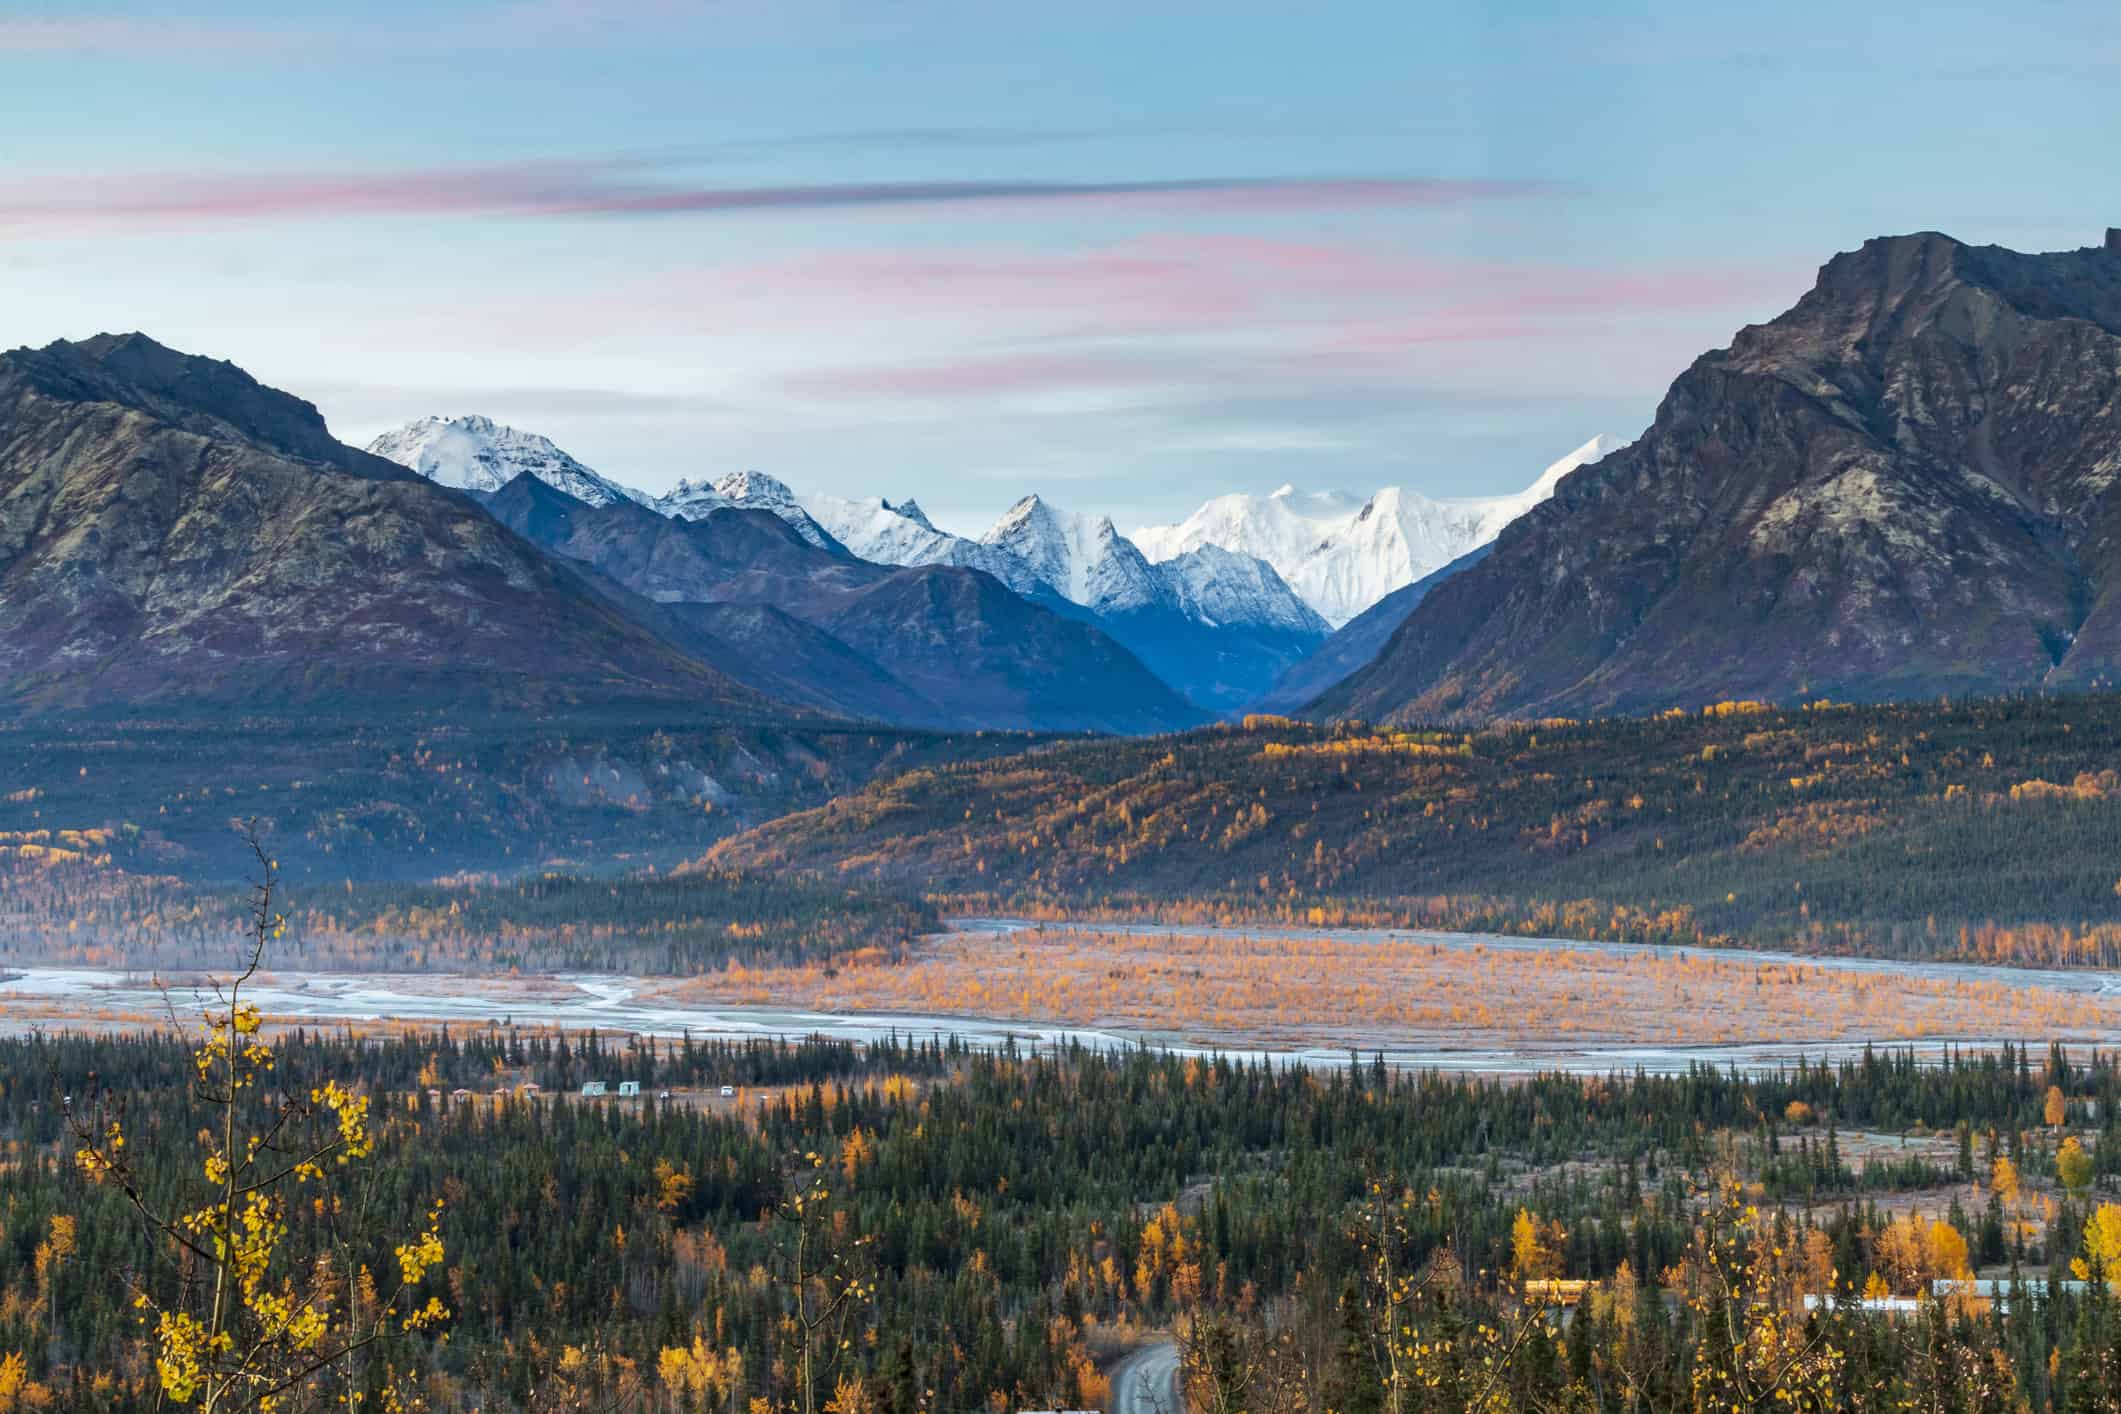 Chugach mountain range in Alaska